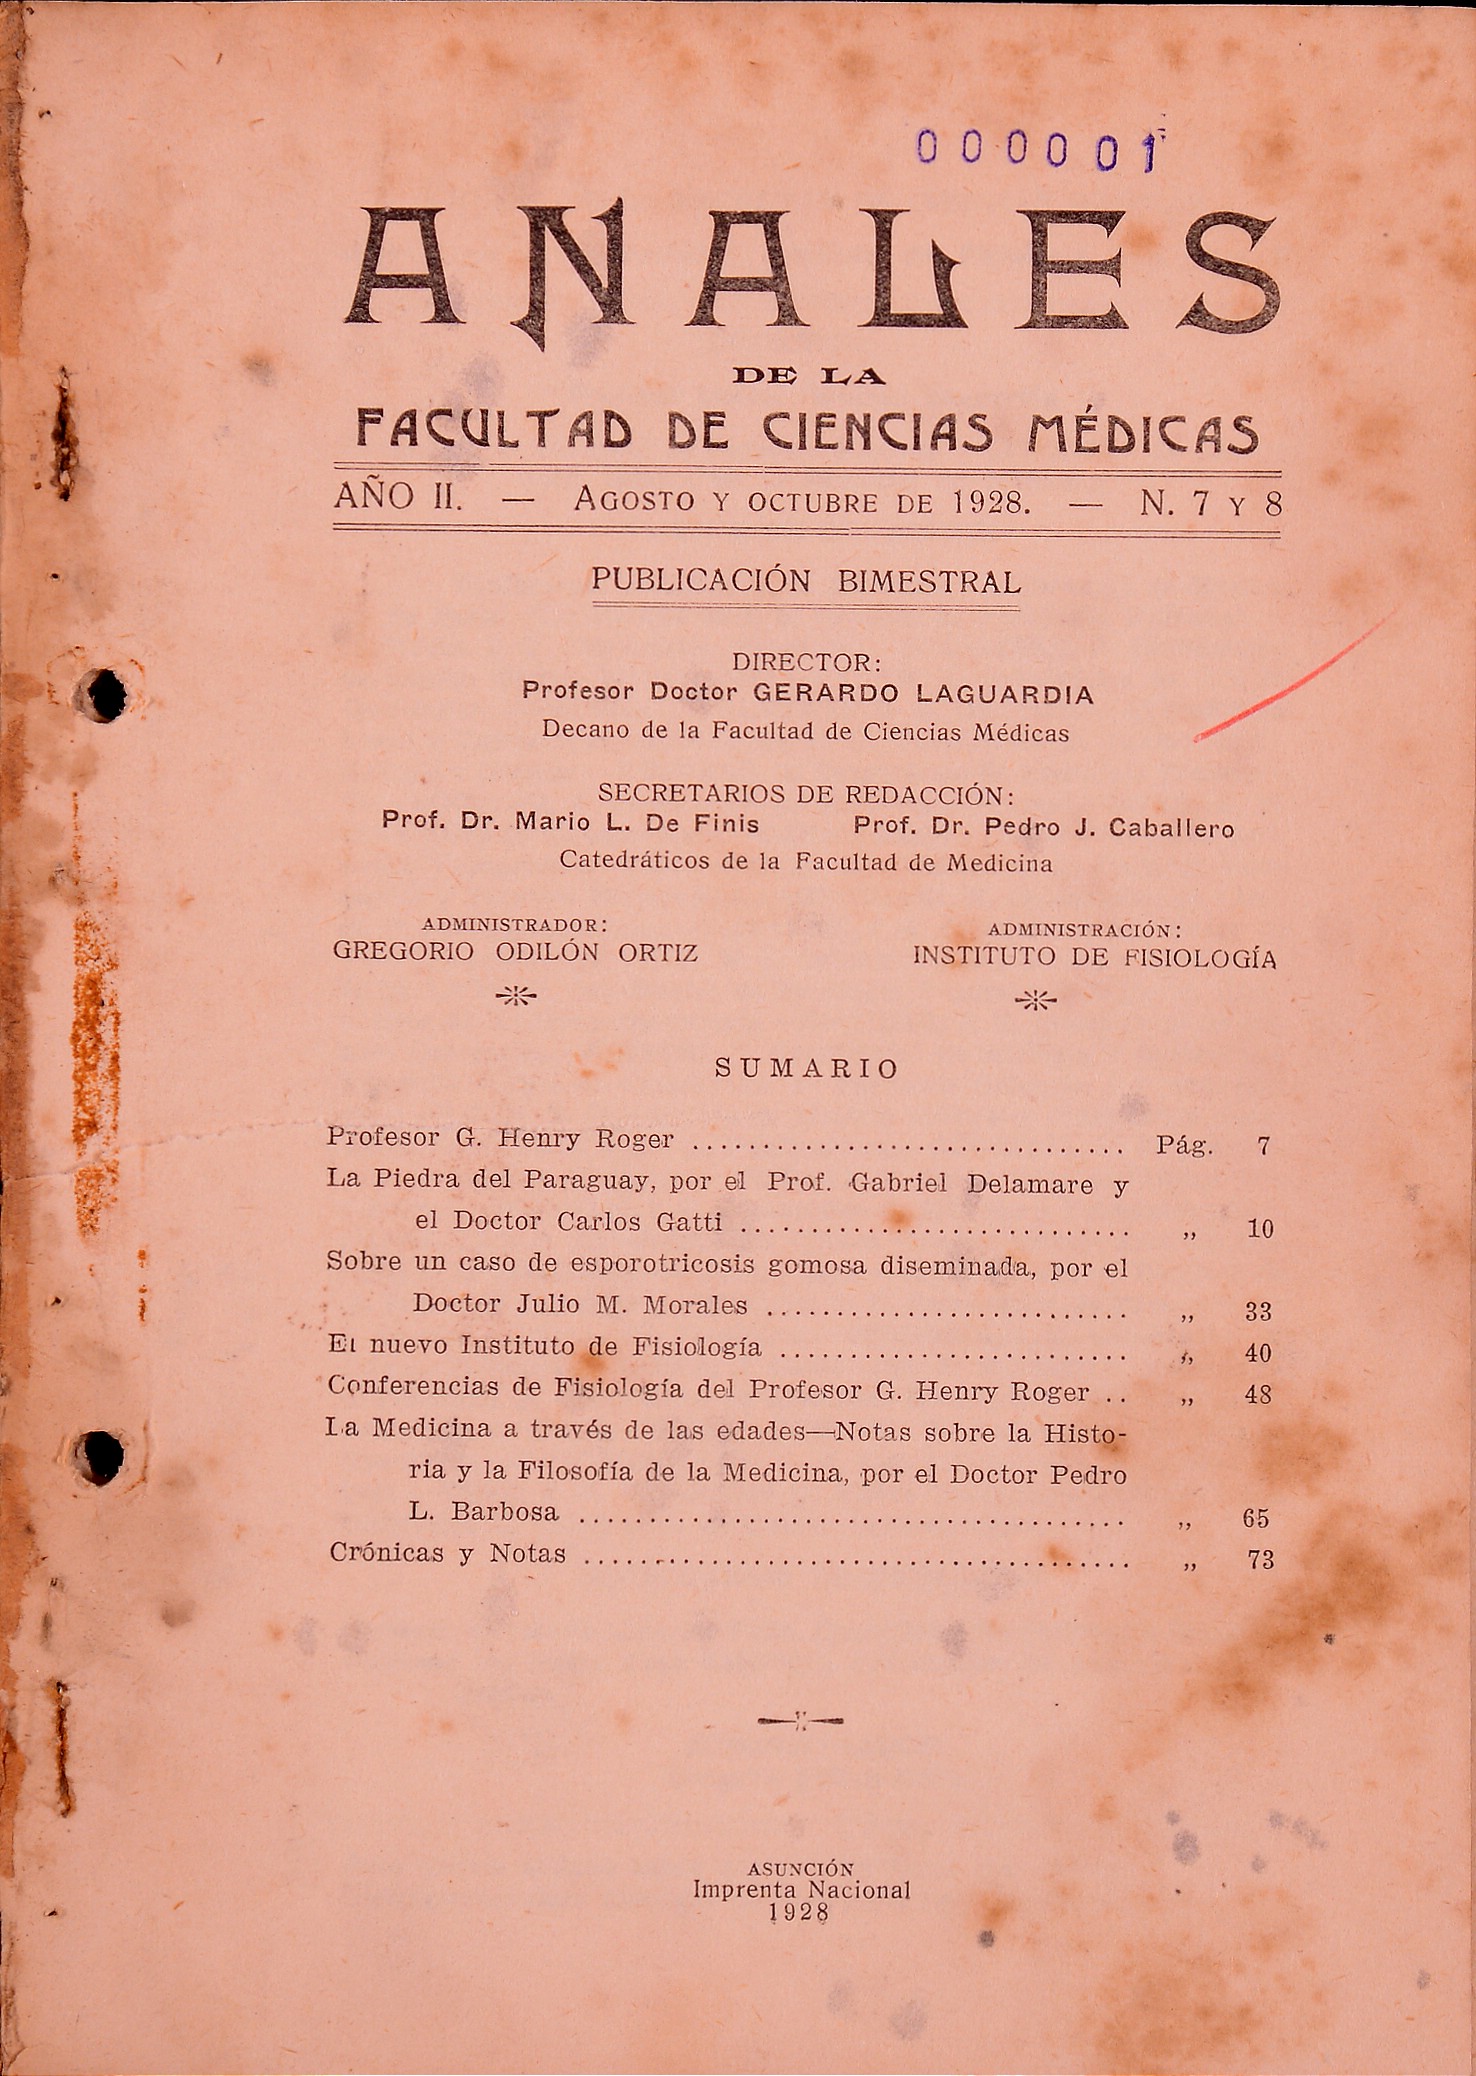 					View Vol. 2 No. 7 y 8 (1928): ANALES de la Facultad de Ciencias Médicas
				